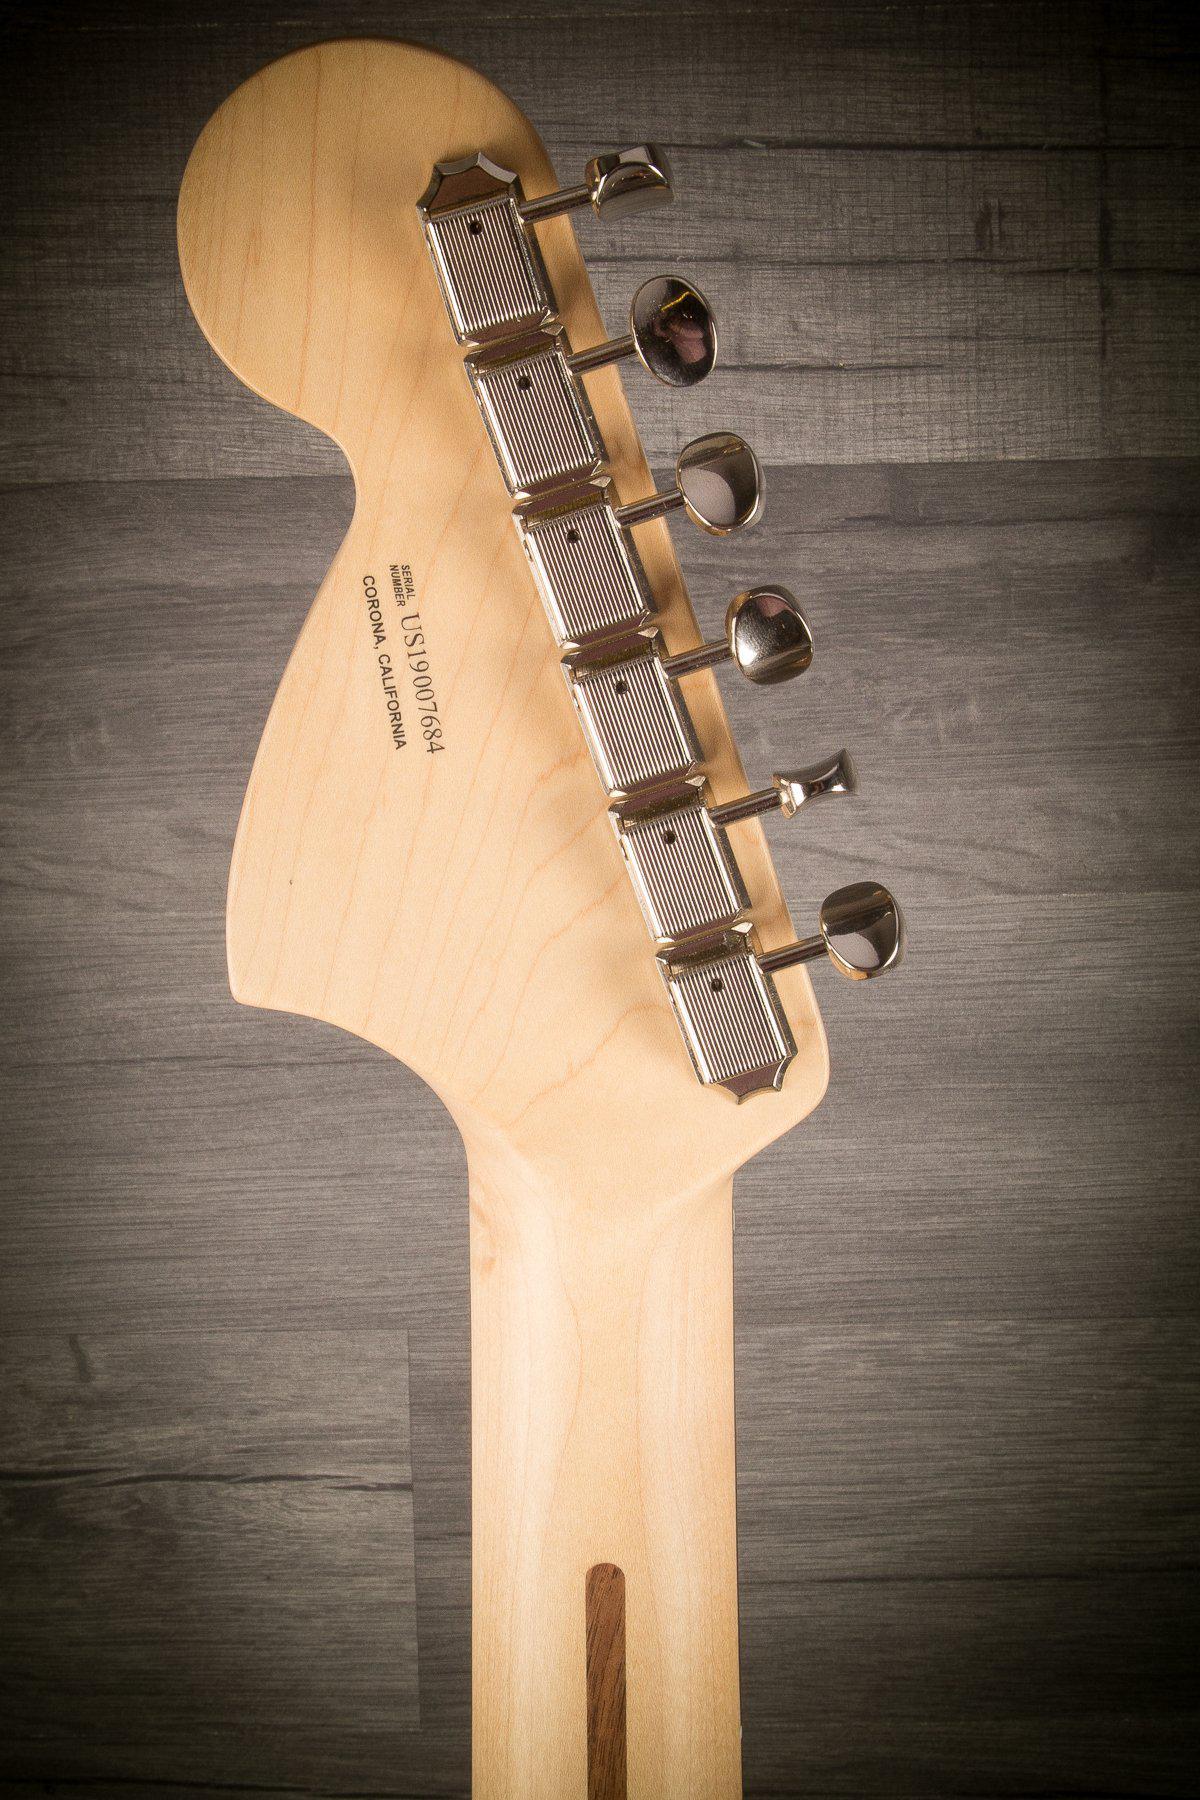 Fender Electric Guitar Fender American Performer Stratocaster - Honey Burst